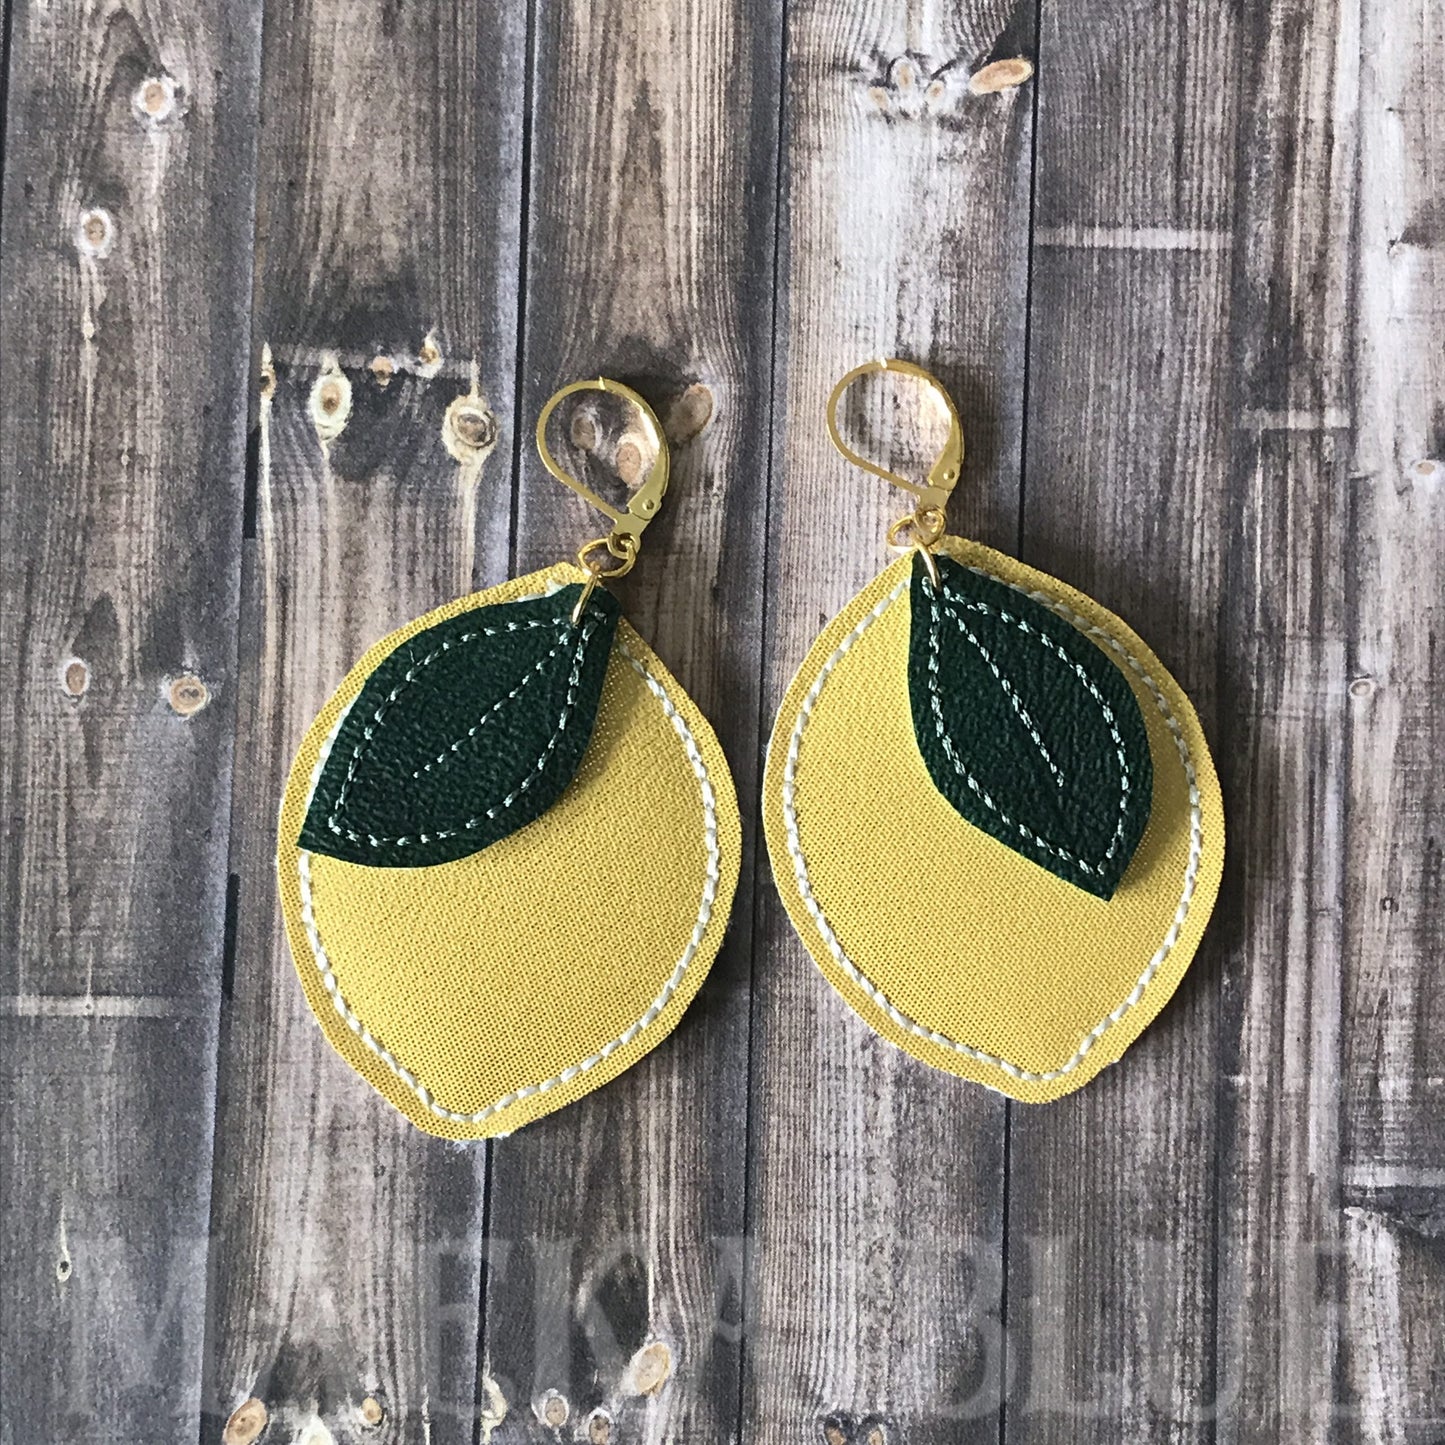 Lemon Earrings - 2 sizes - Digital Embroidery Design